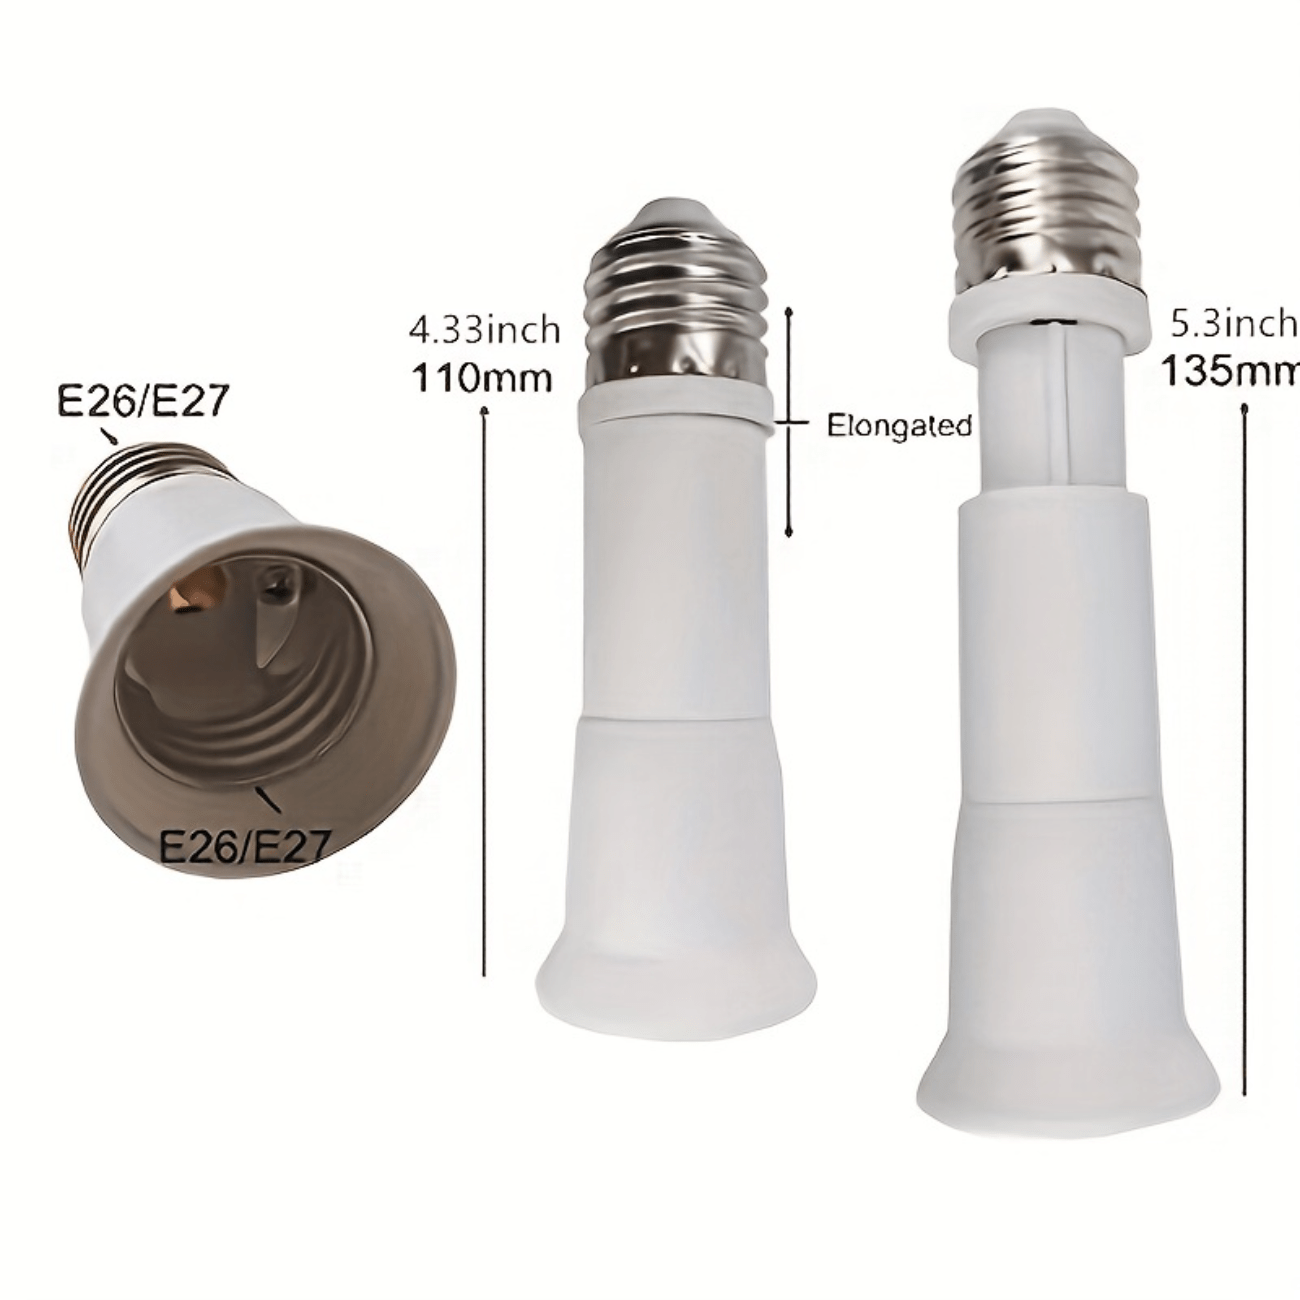 1 E 27 Light Socket Splitter Adapter Converter Standard Led - Temu